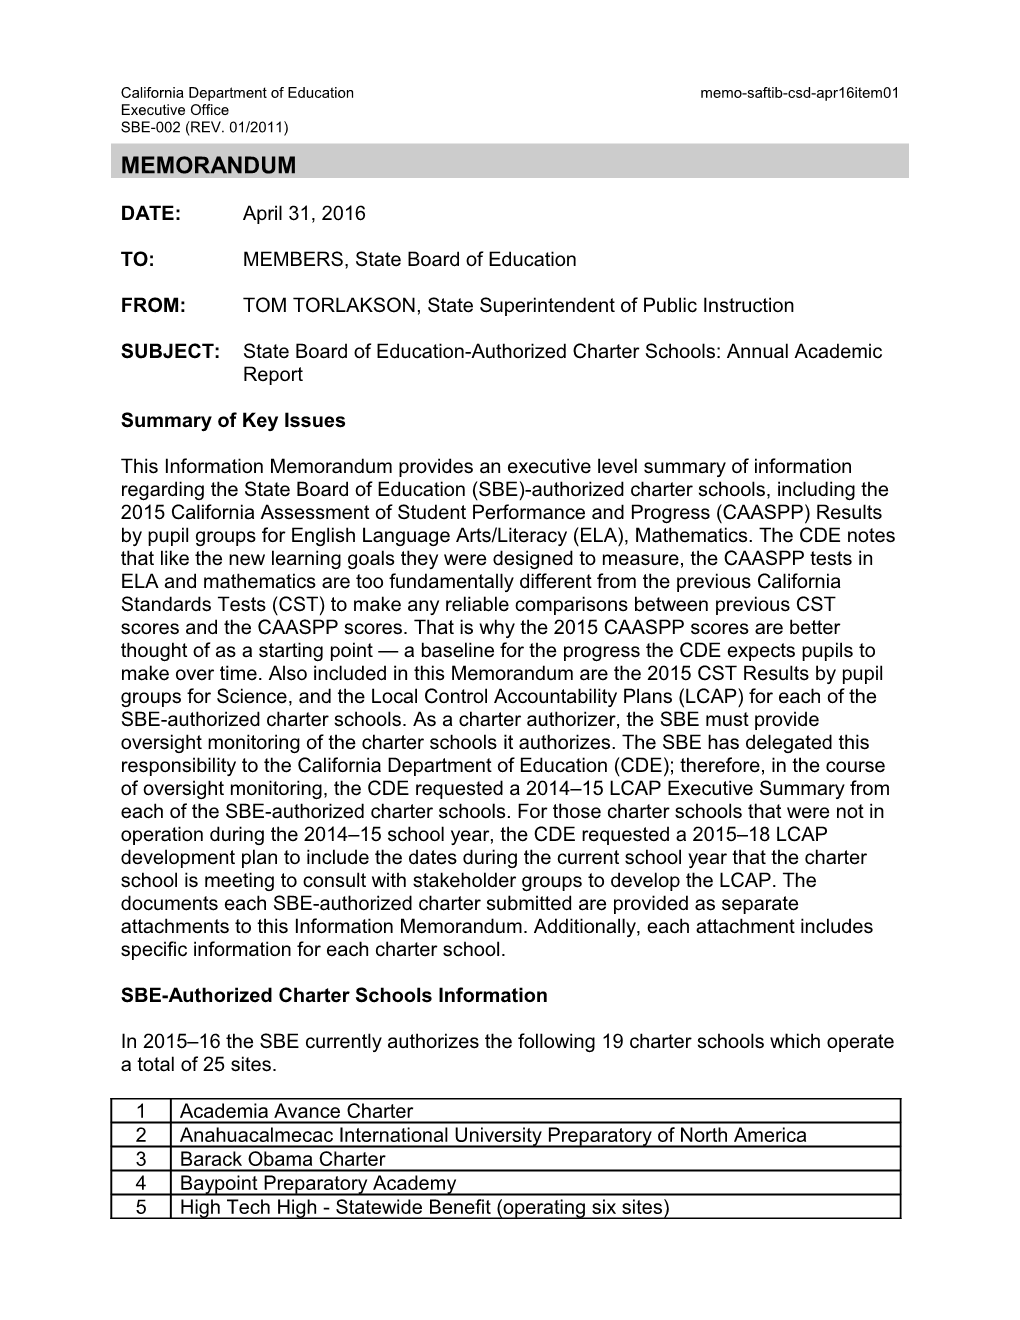 April 2016 Memo CSD Item 01 - Information Memorandum (CA State Board of Education)